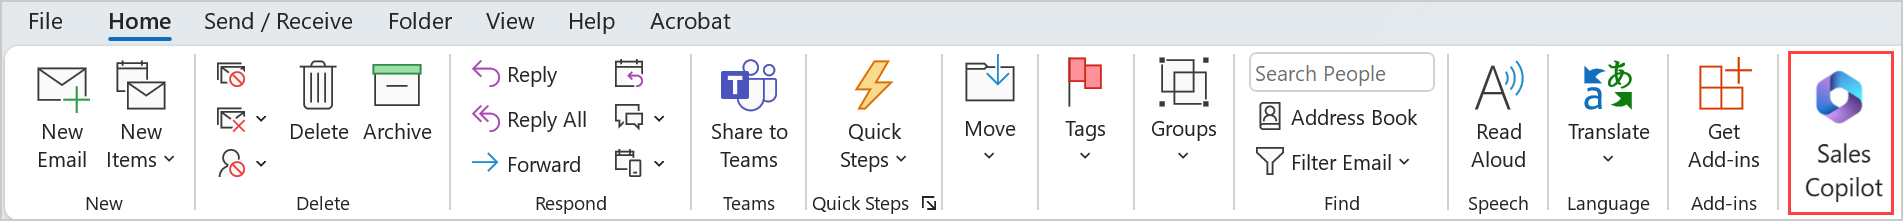 Screenshot showing Sales Copilot icon in Outlook desktop.